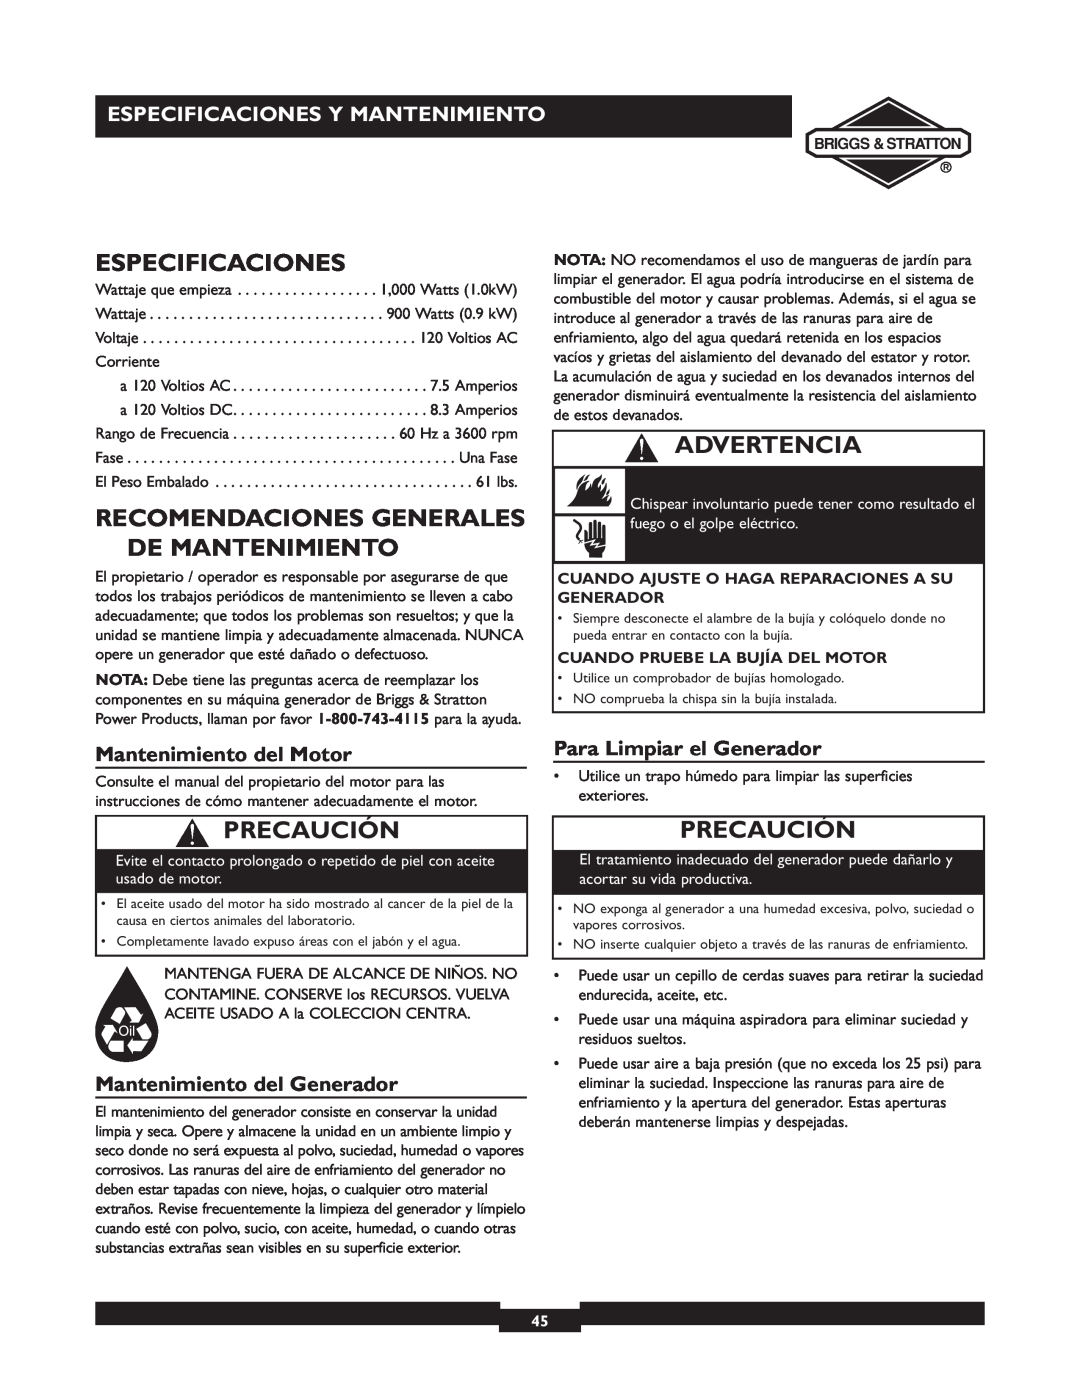 Briggs & Stratton 01532-4 Recomendaciones Generales De Mantenimiento, Especificaciones Y Mantenimiento, Advertencia 